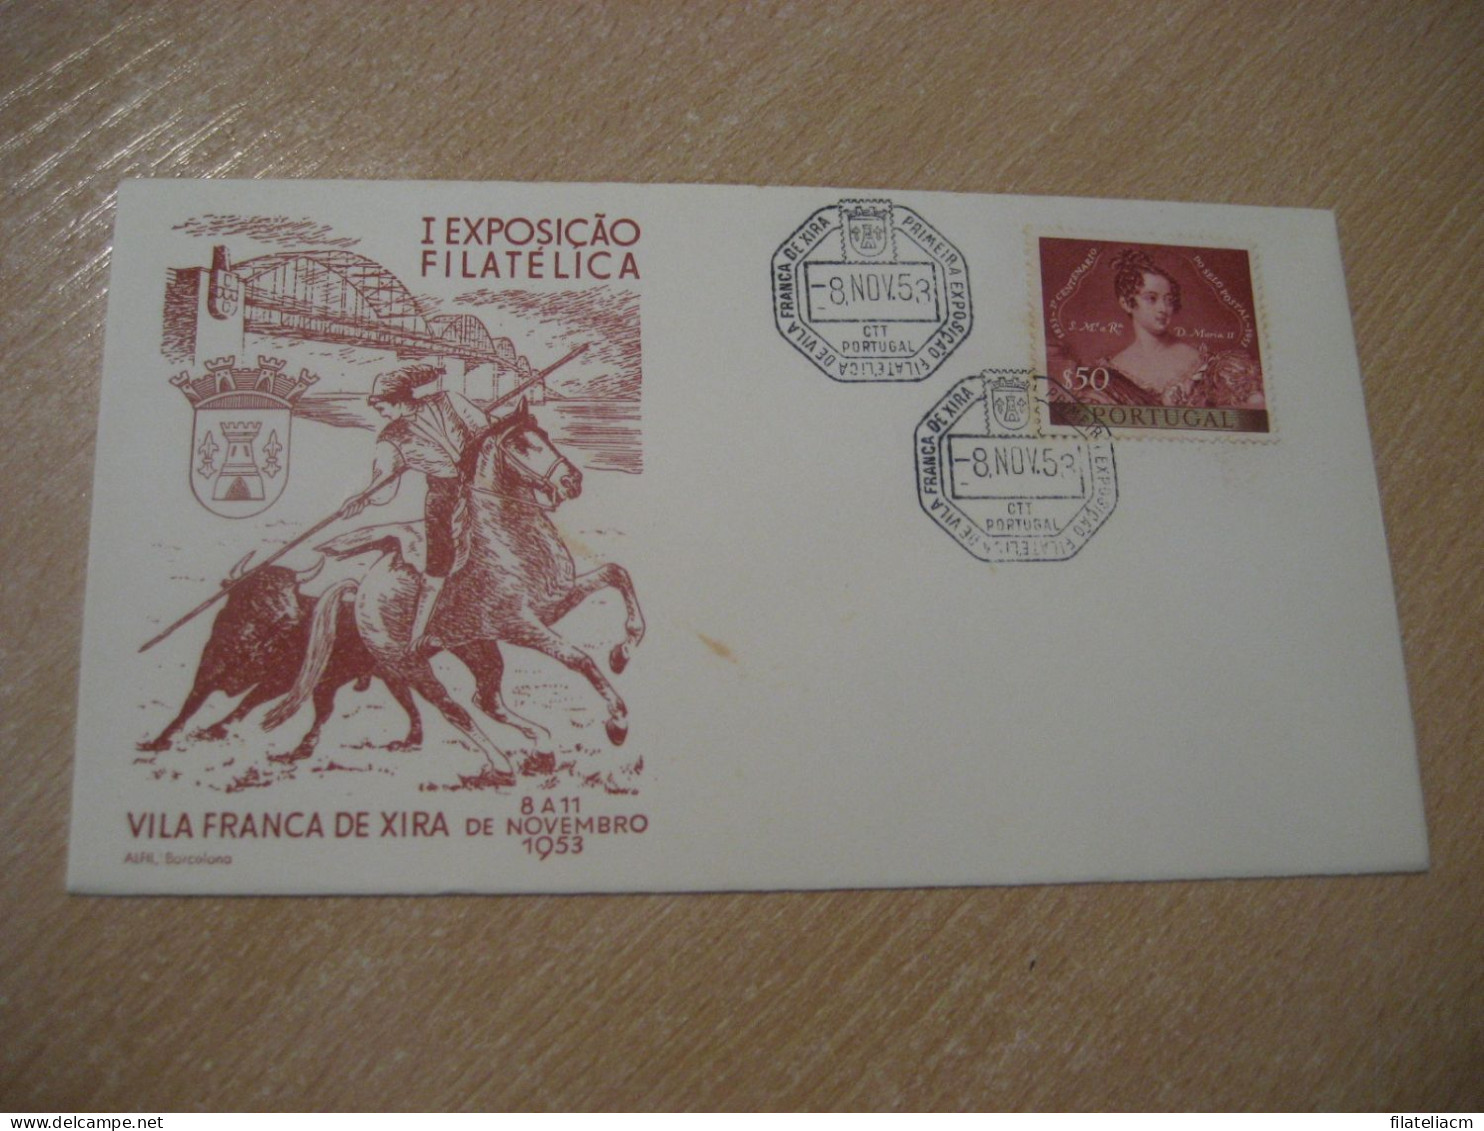 VILA FRANCA DE XIRA 1953 Expo Filatelica Toro Rejoneador Cow Bull Horse Matador Cancel Cover PORTUGAL - Lettres & Documents